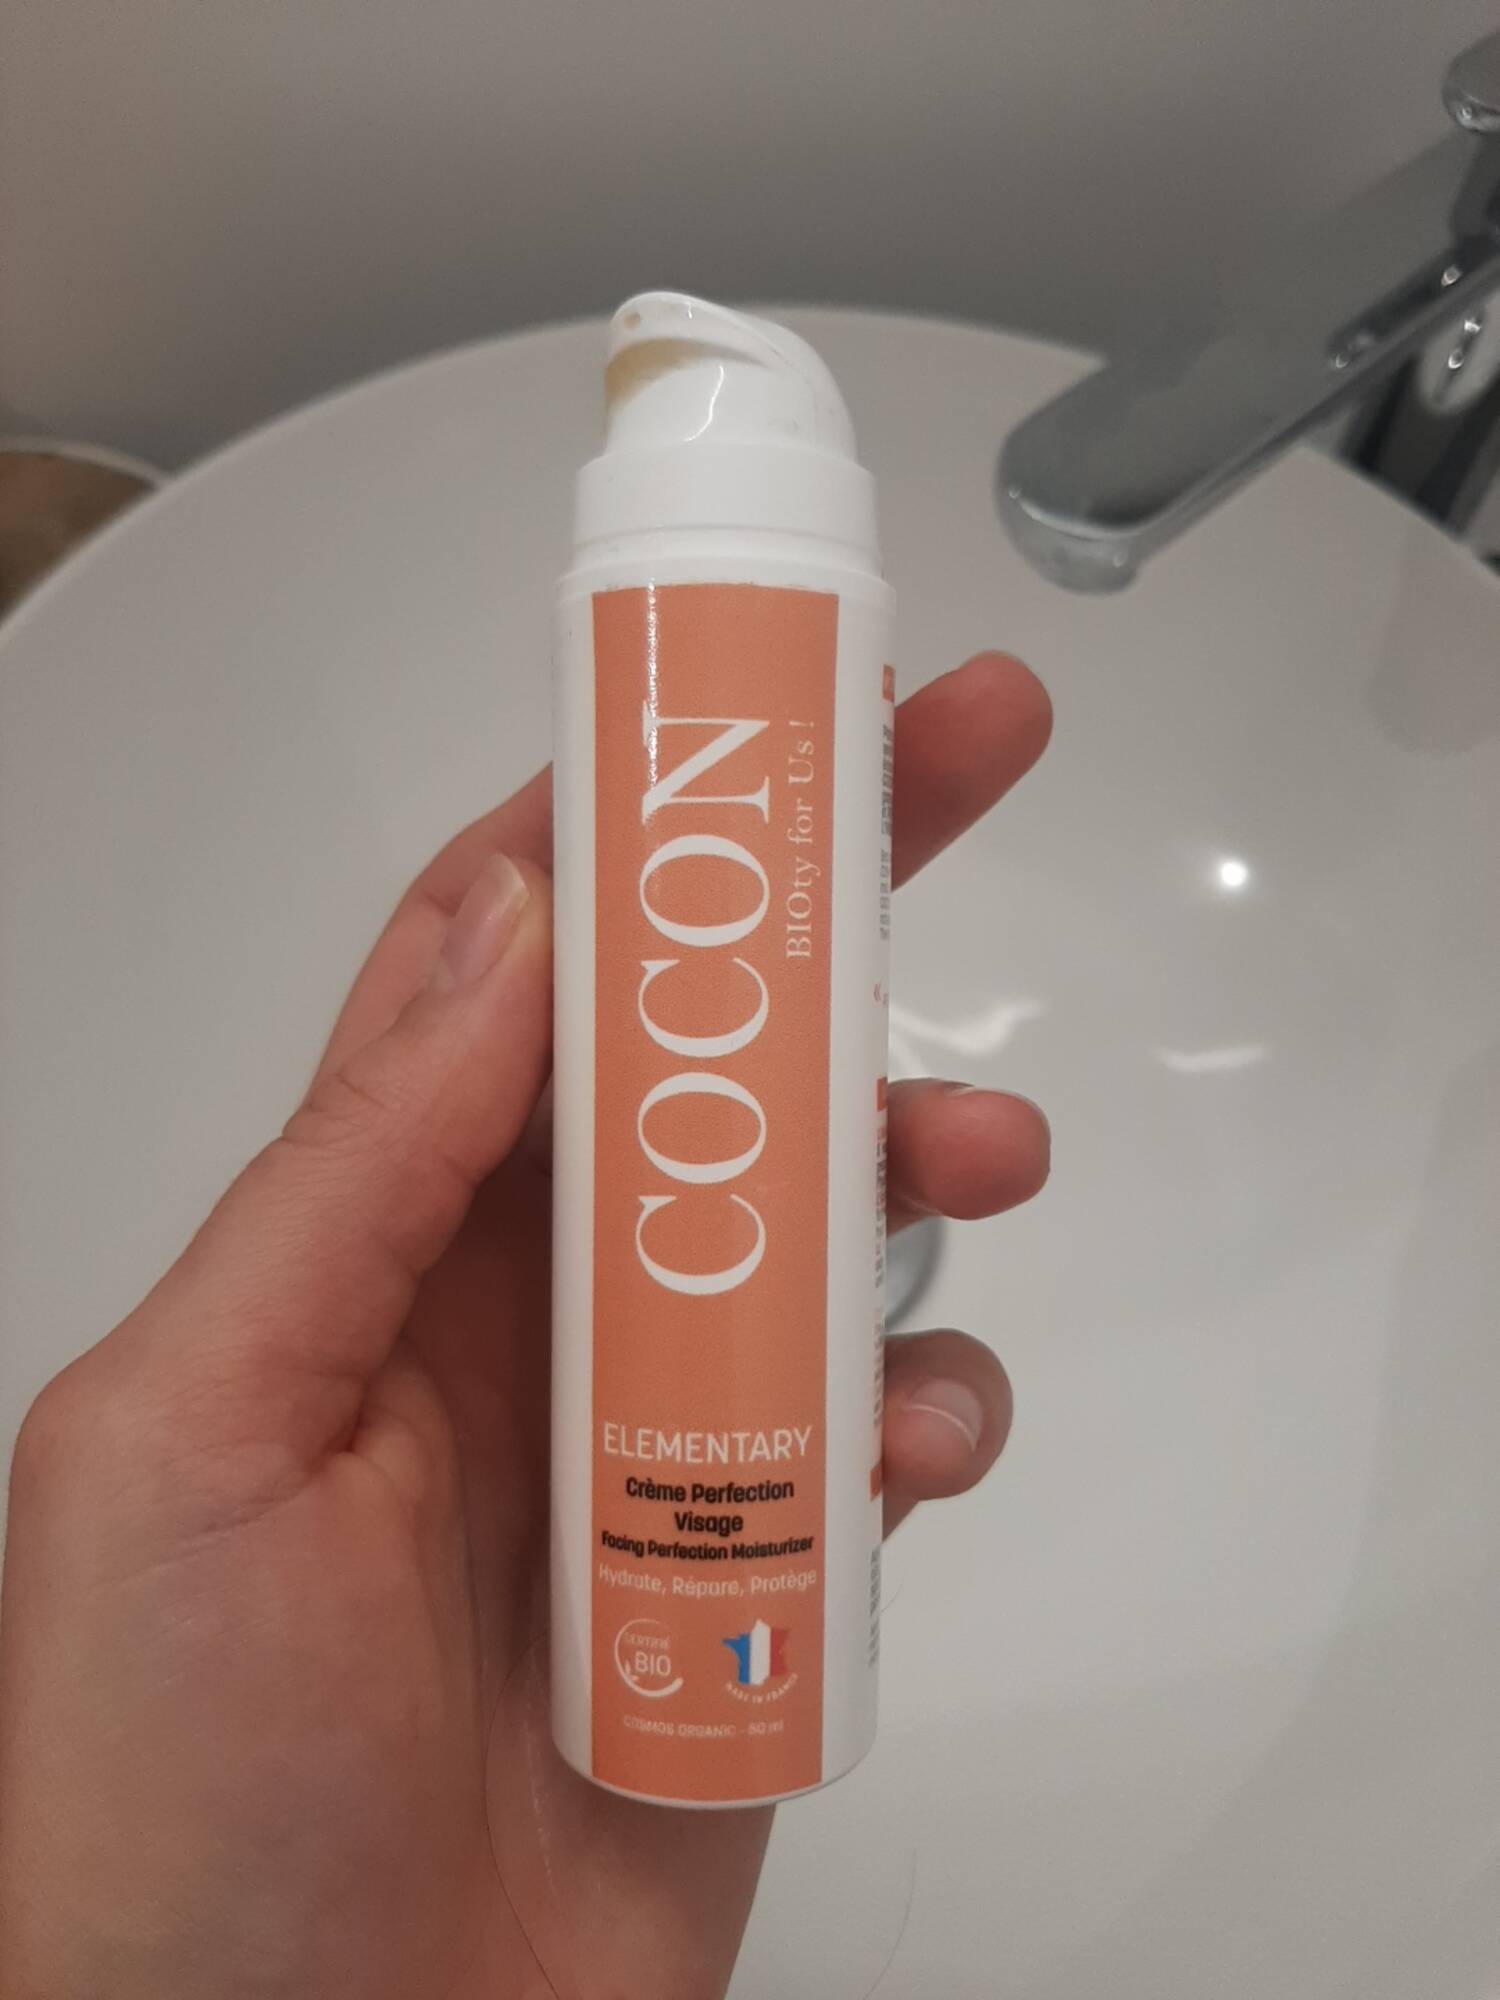 COCON - Elementary - Crème perfection visage 